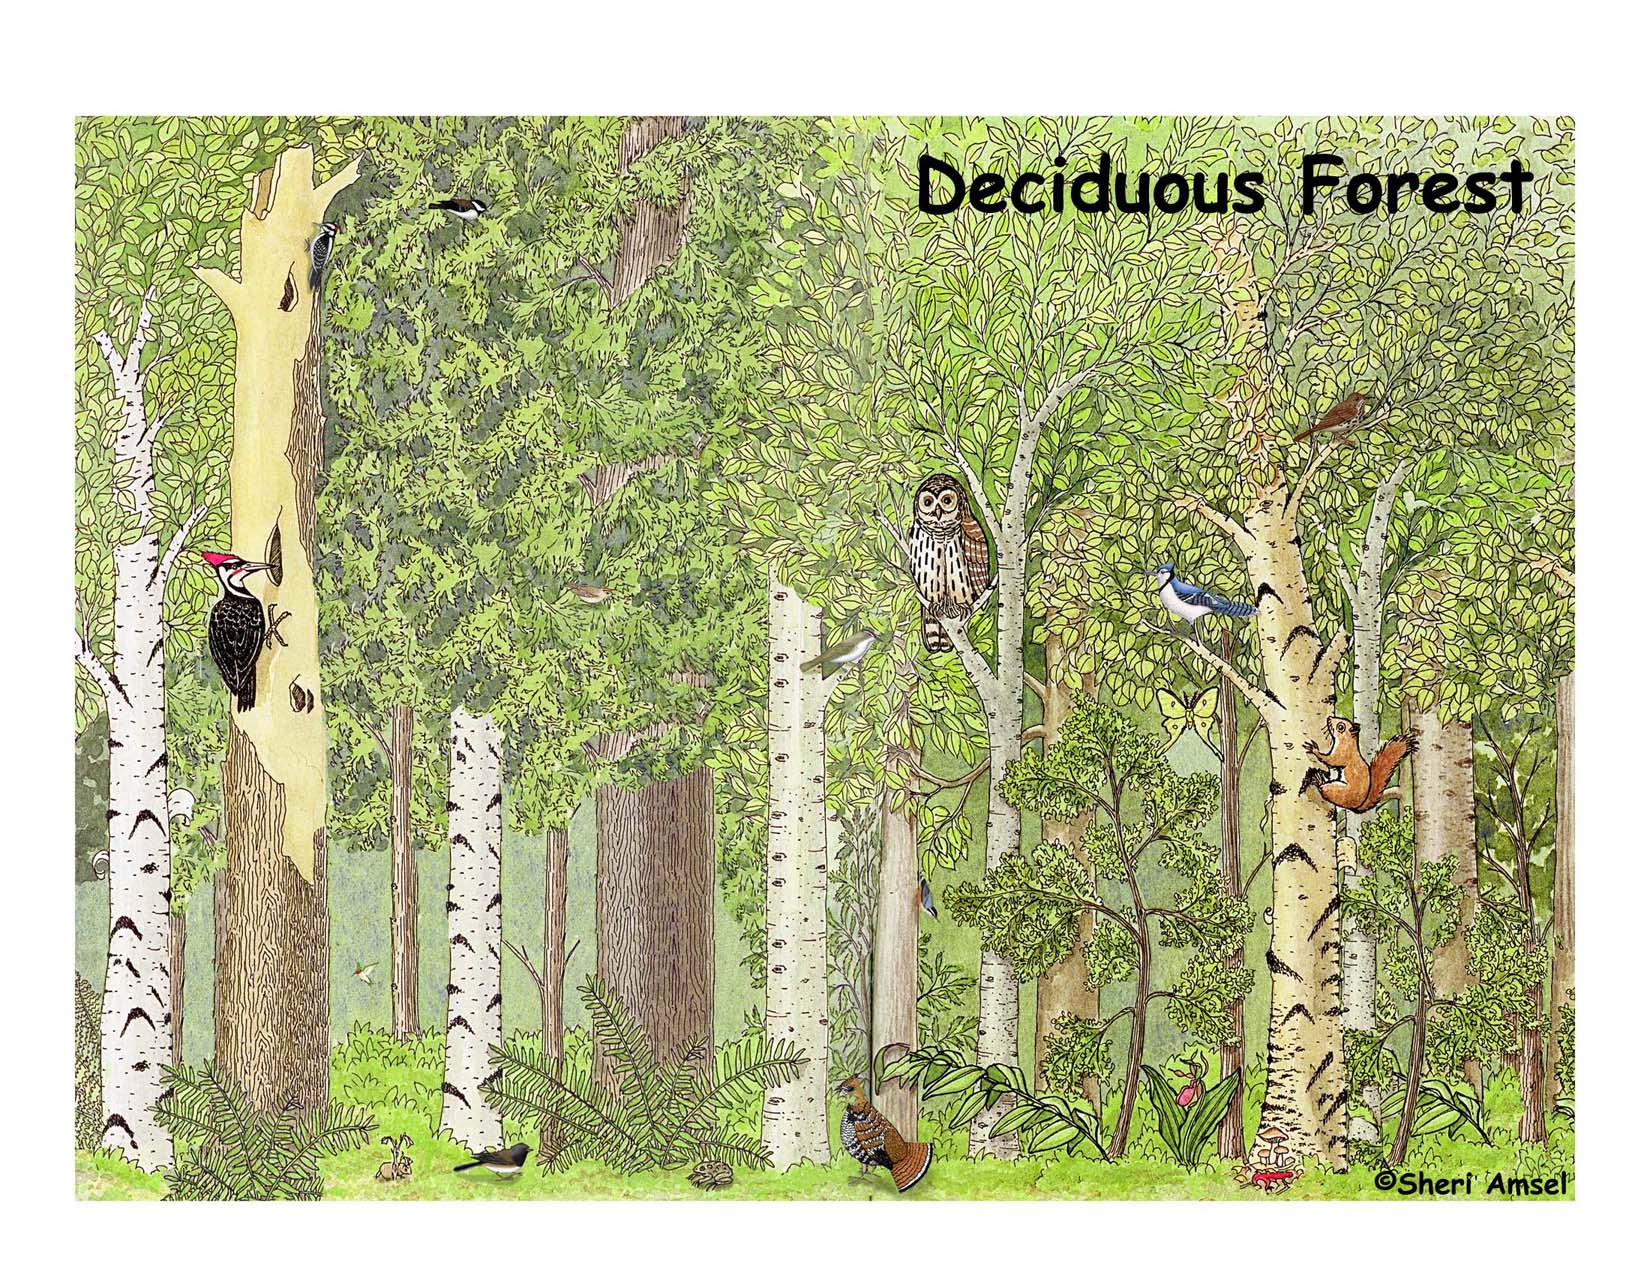 Forest_deciduous150